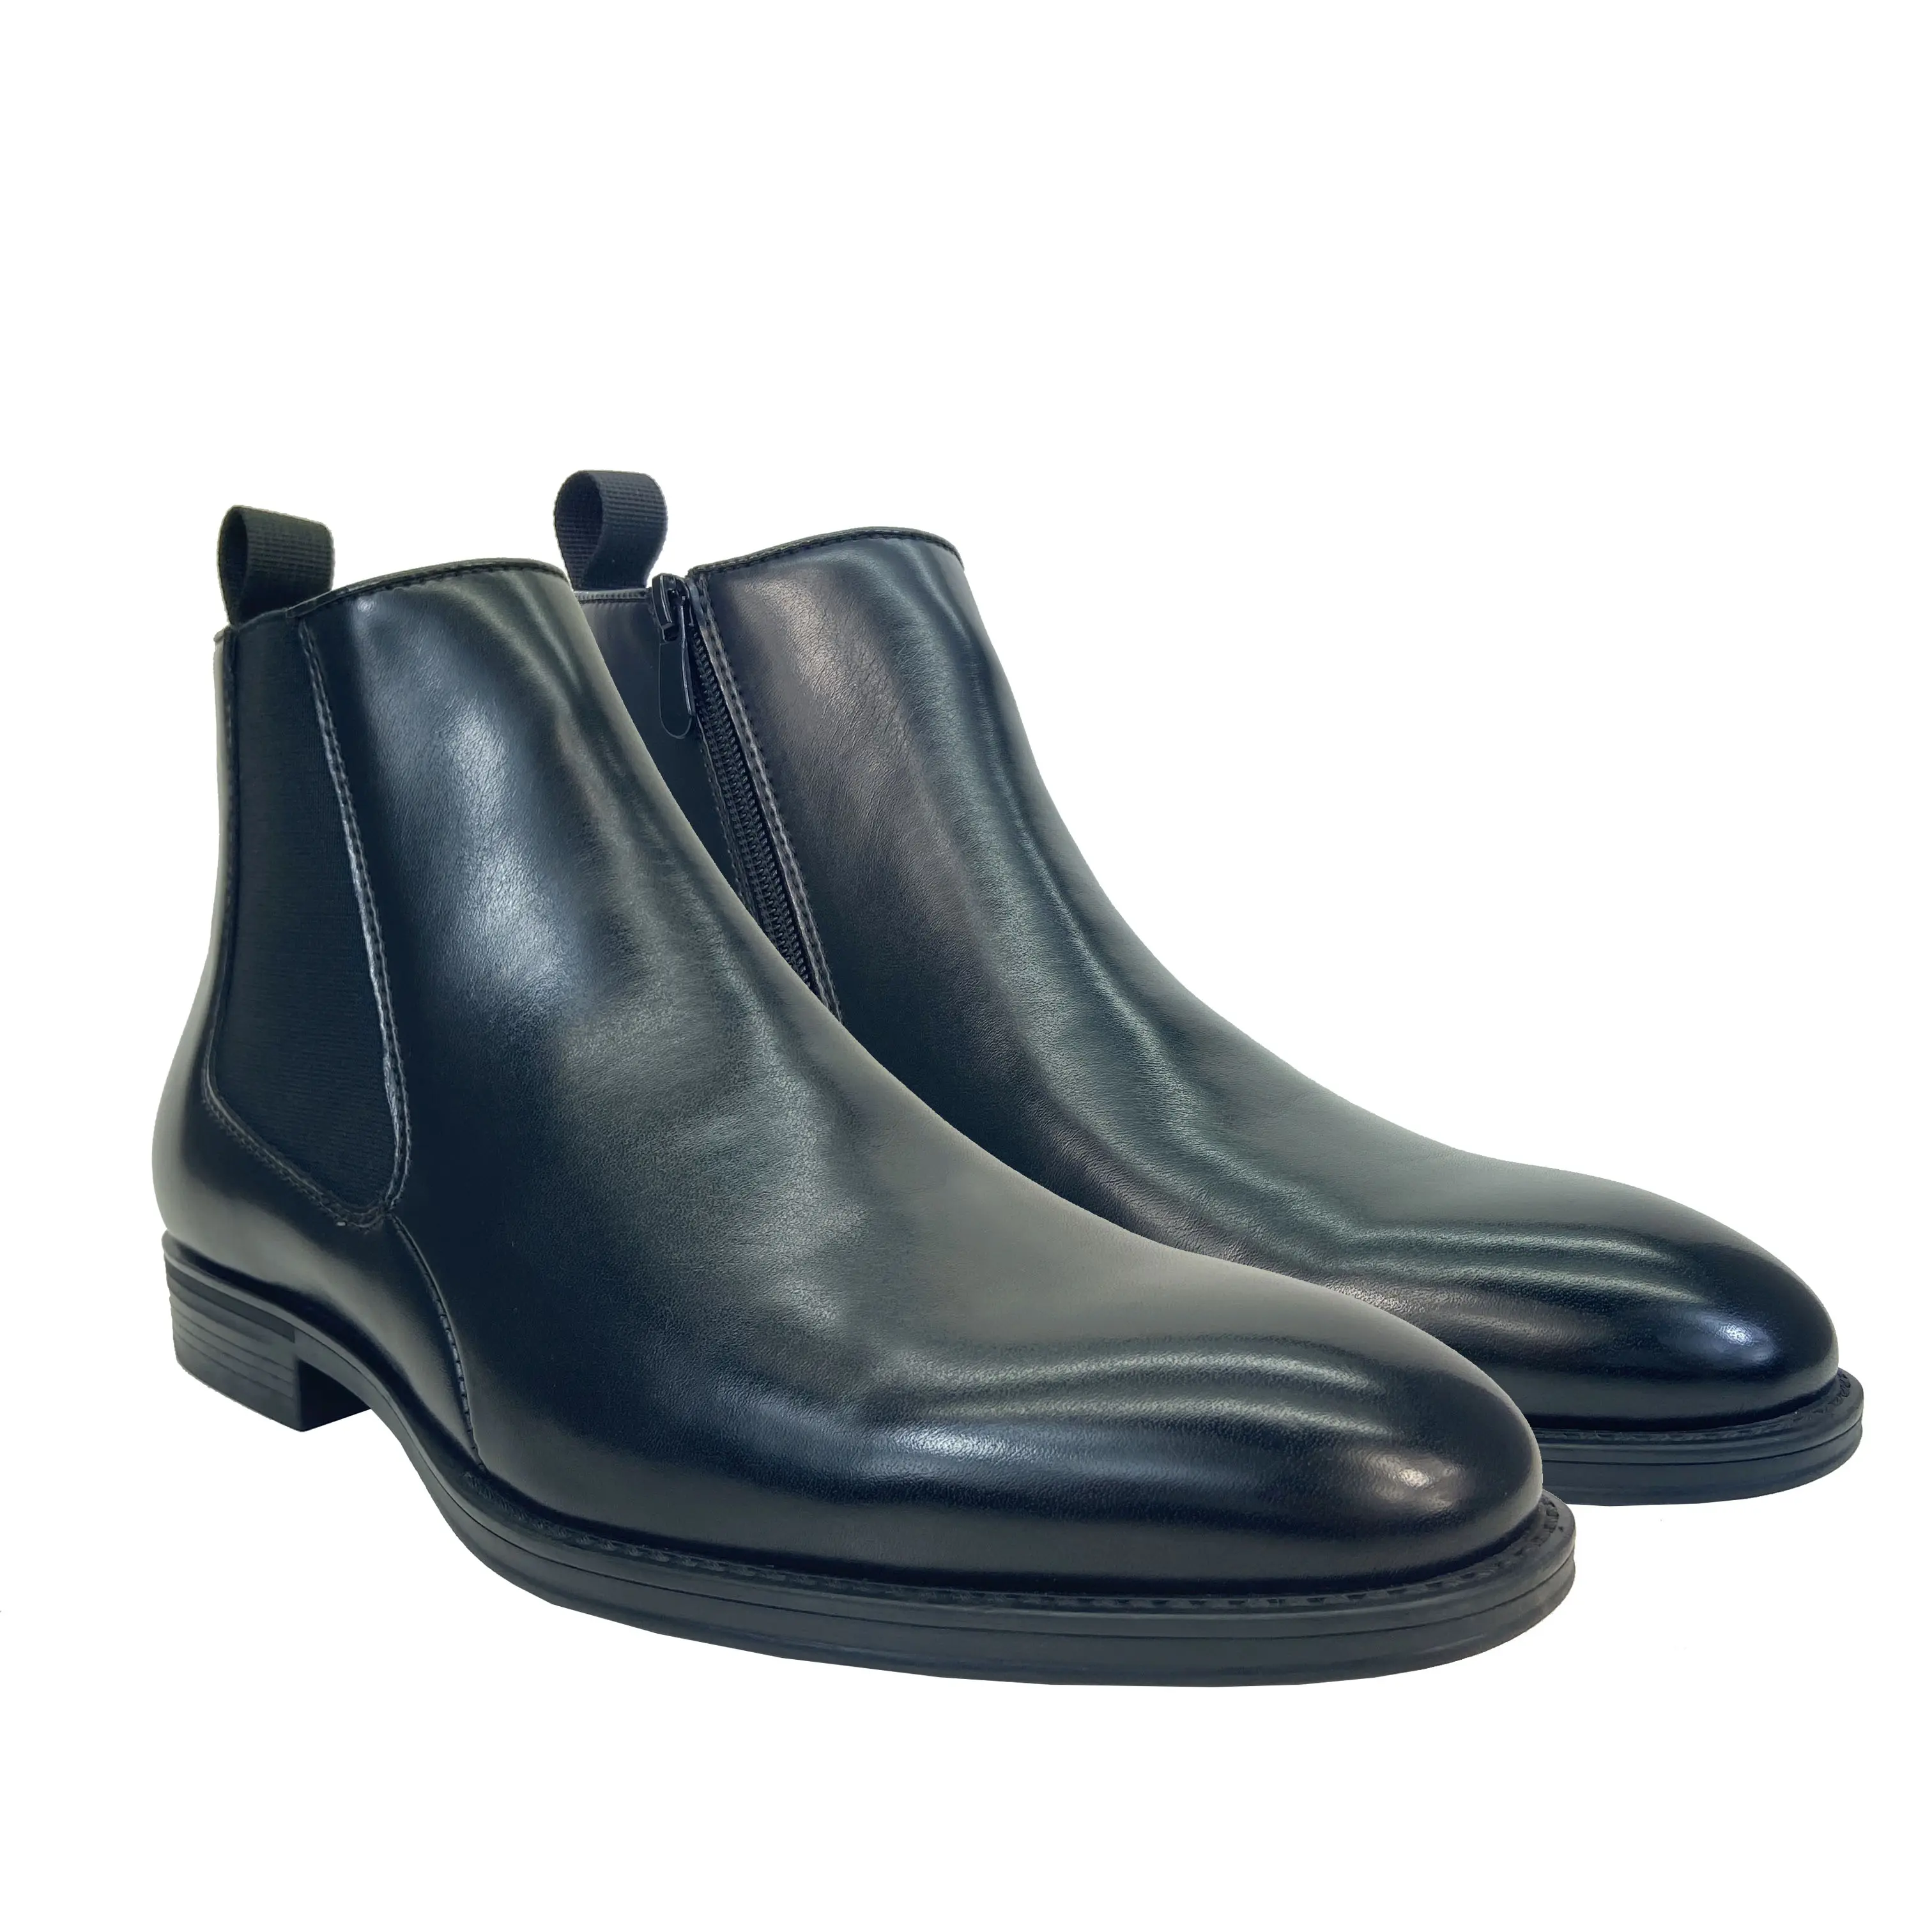 New business abito classico scarpe PU stivali chelsea scarpe nere per uomo slip on